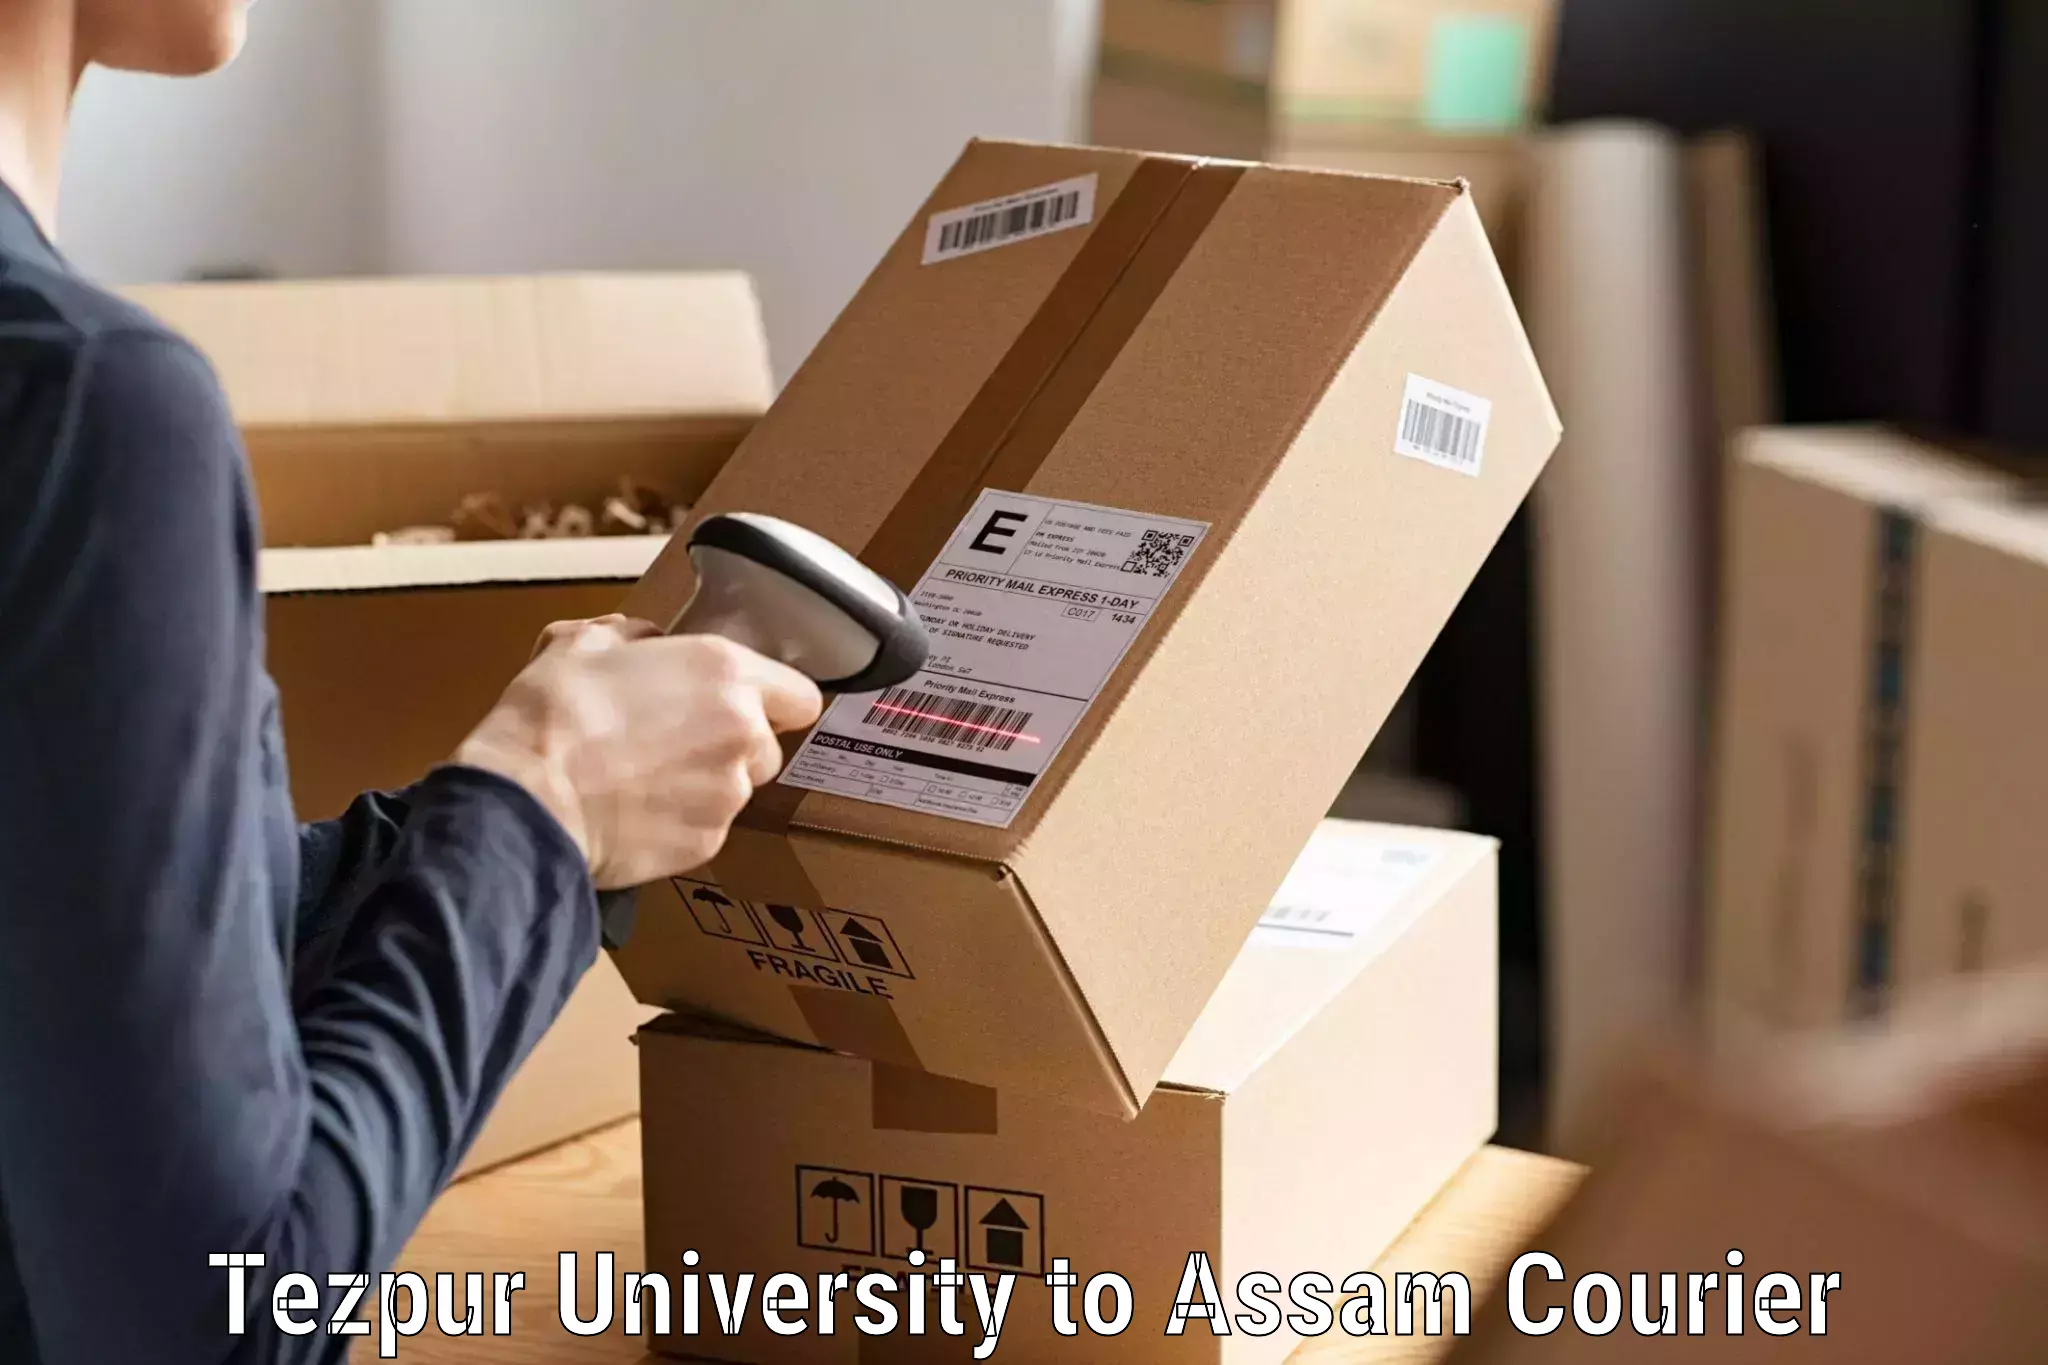 Smart parcel delivery Tezpur University to Jorhat